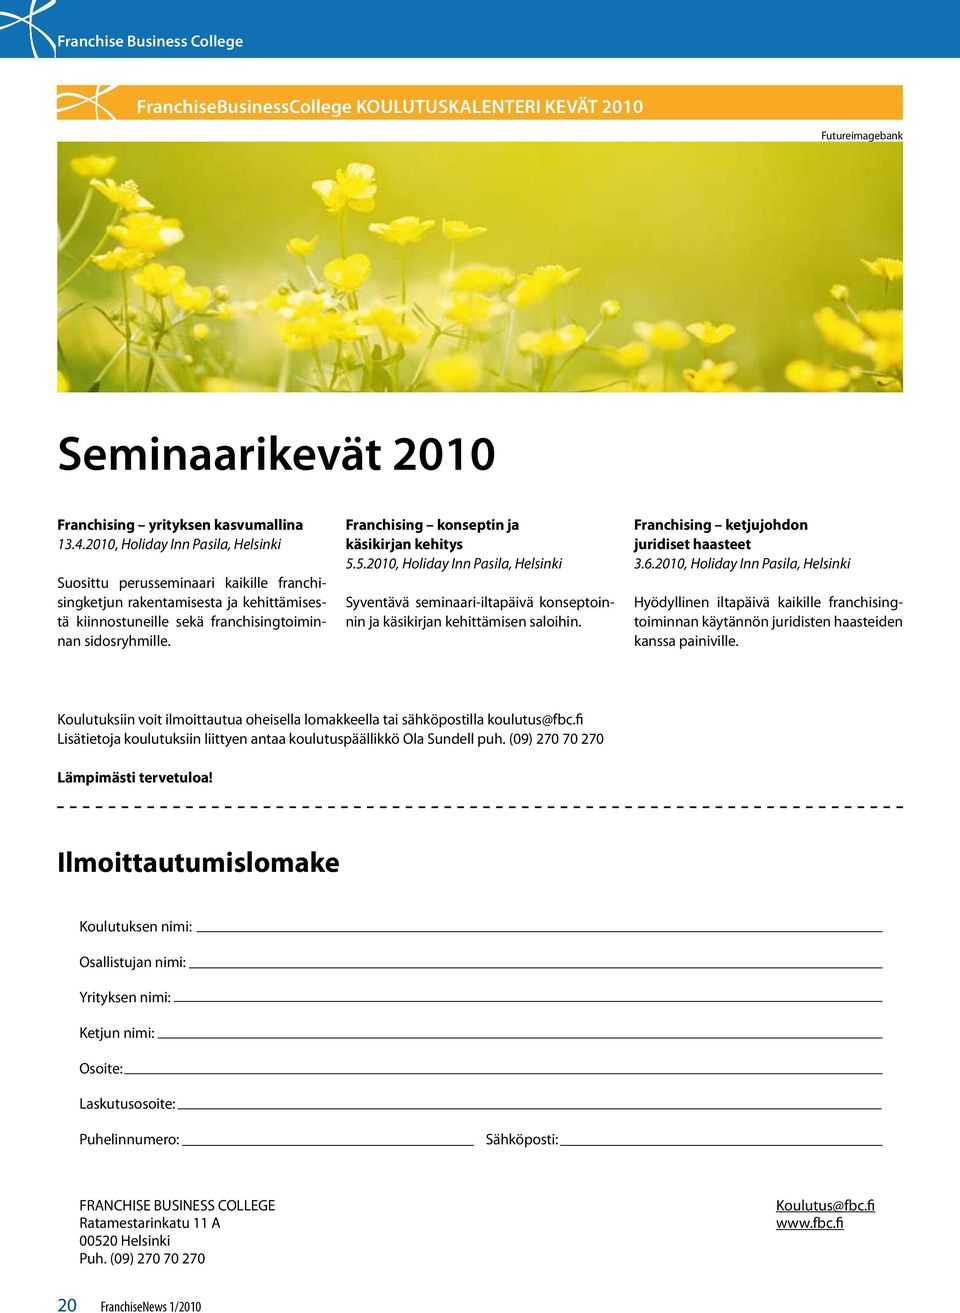 Franchising konseptin ja käsikirjan kehitys 5.5.2010, Holiday Inn Pasila, Helsinki Syventävä seminaari-iltapäivä konseptoinnin ja käsikirjan kehittämisen saloihin.